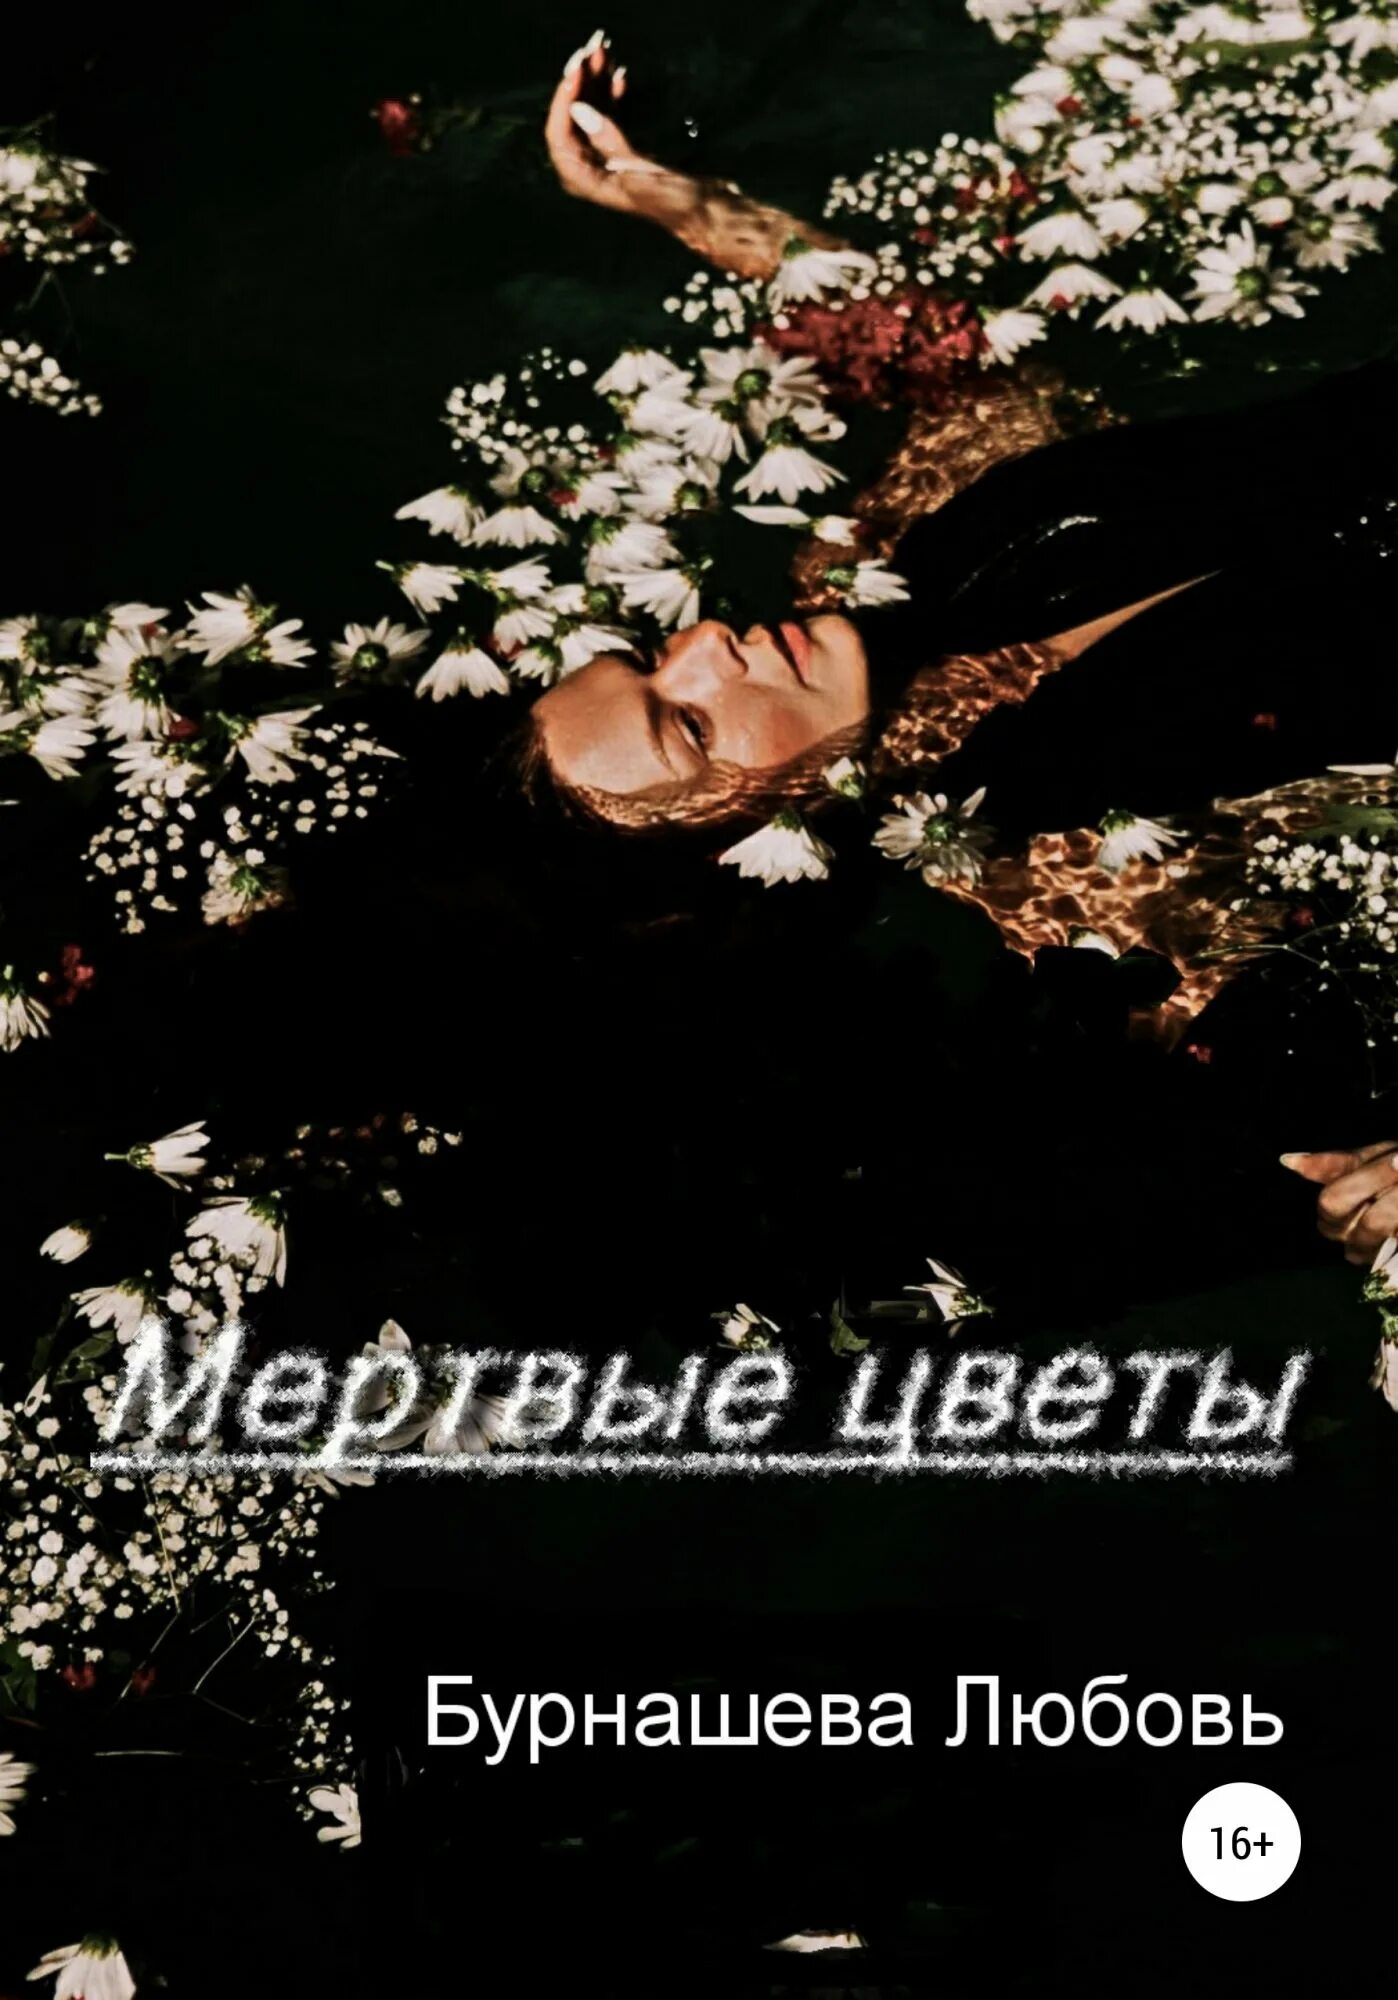 Мертвые цветы. Мертвые цветы книга. Нюберг мертвые цветы.